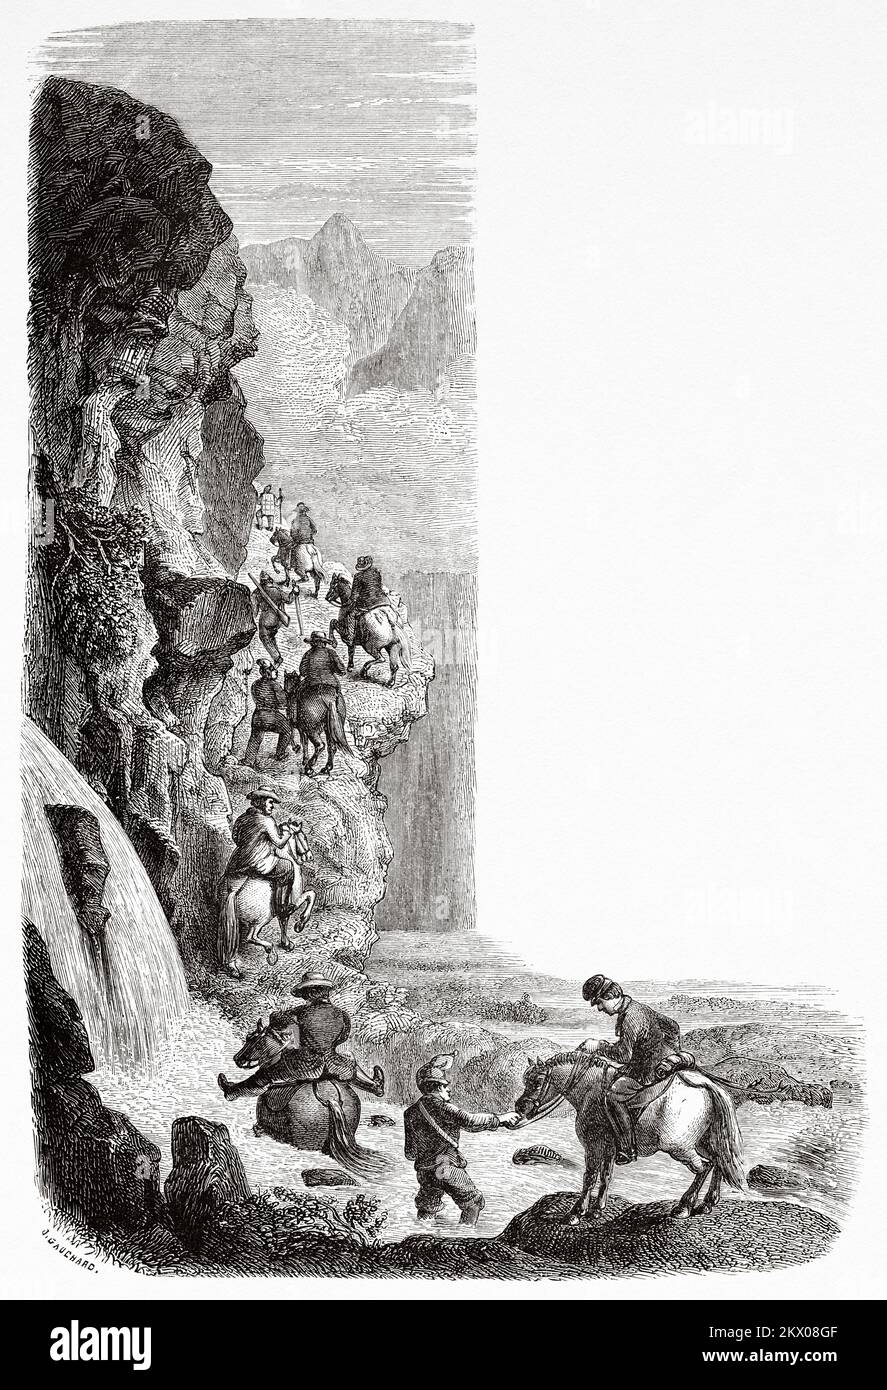 Torrent et corniches, Norvège. Scandinavie, Europe du Nord. Voyages dans les États scandinaves par Saint-Blaise 1856 Banque D'Images